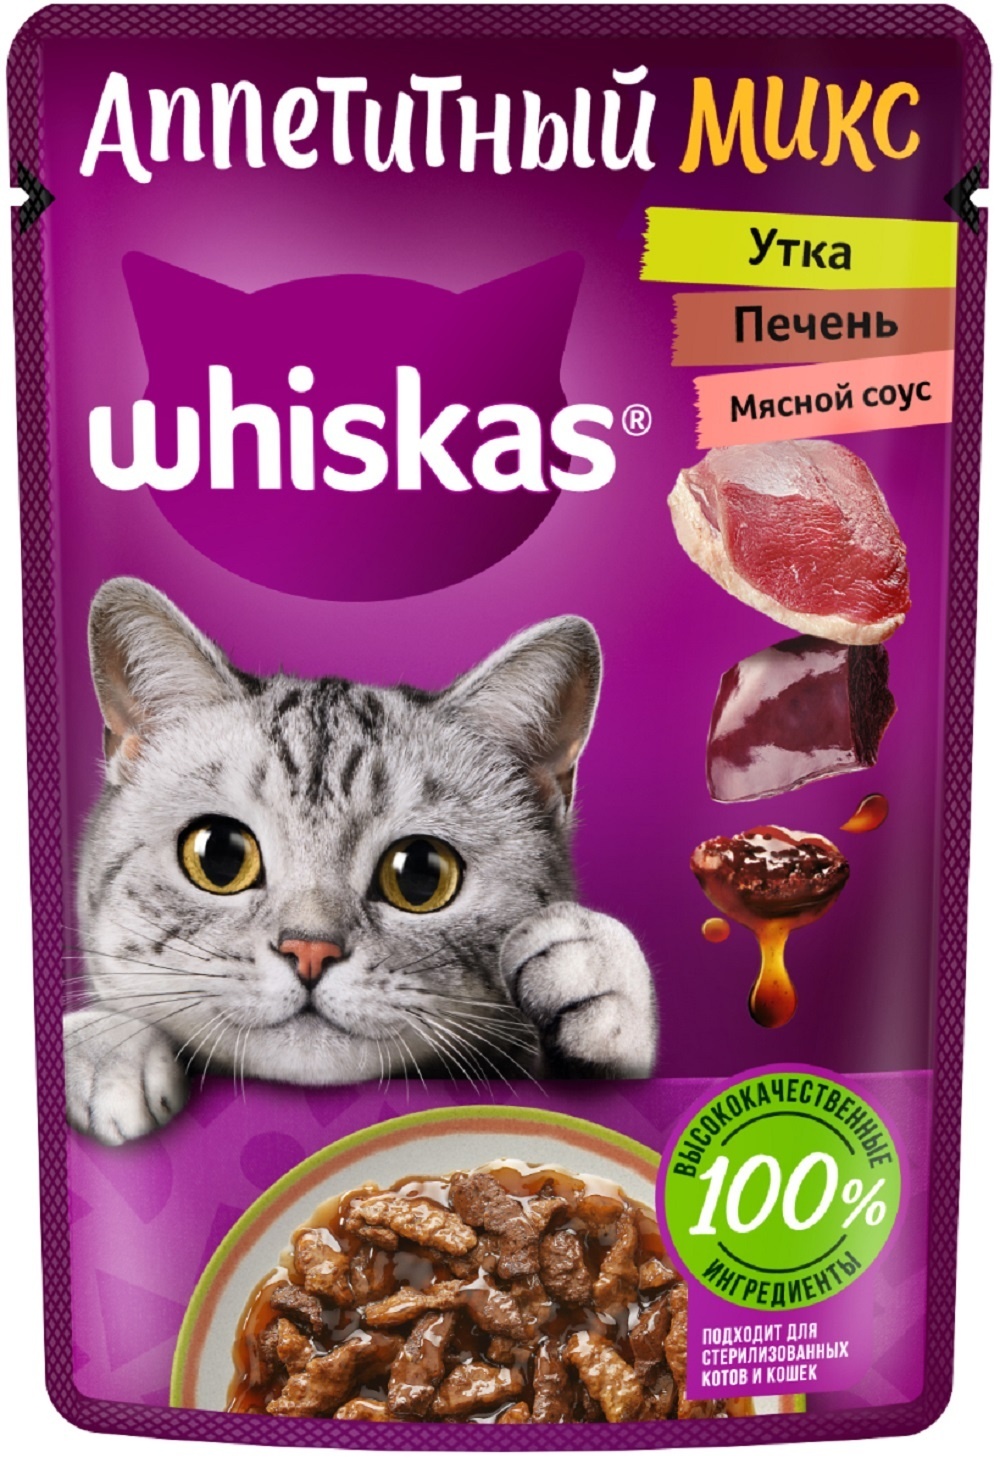 Whiskas Whiskas влажный корм «Аппетитный микс» для кошек, с уткой и печенью в мясном соусе (75 г) влажный корм для стерилизованных кошек whiskas аппетитный микс с уткой с печенью 75 г кусочки в соусе